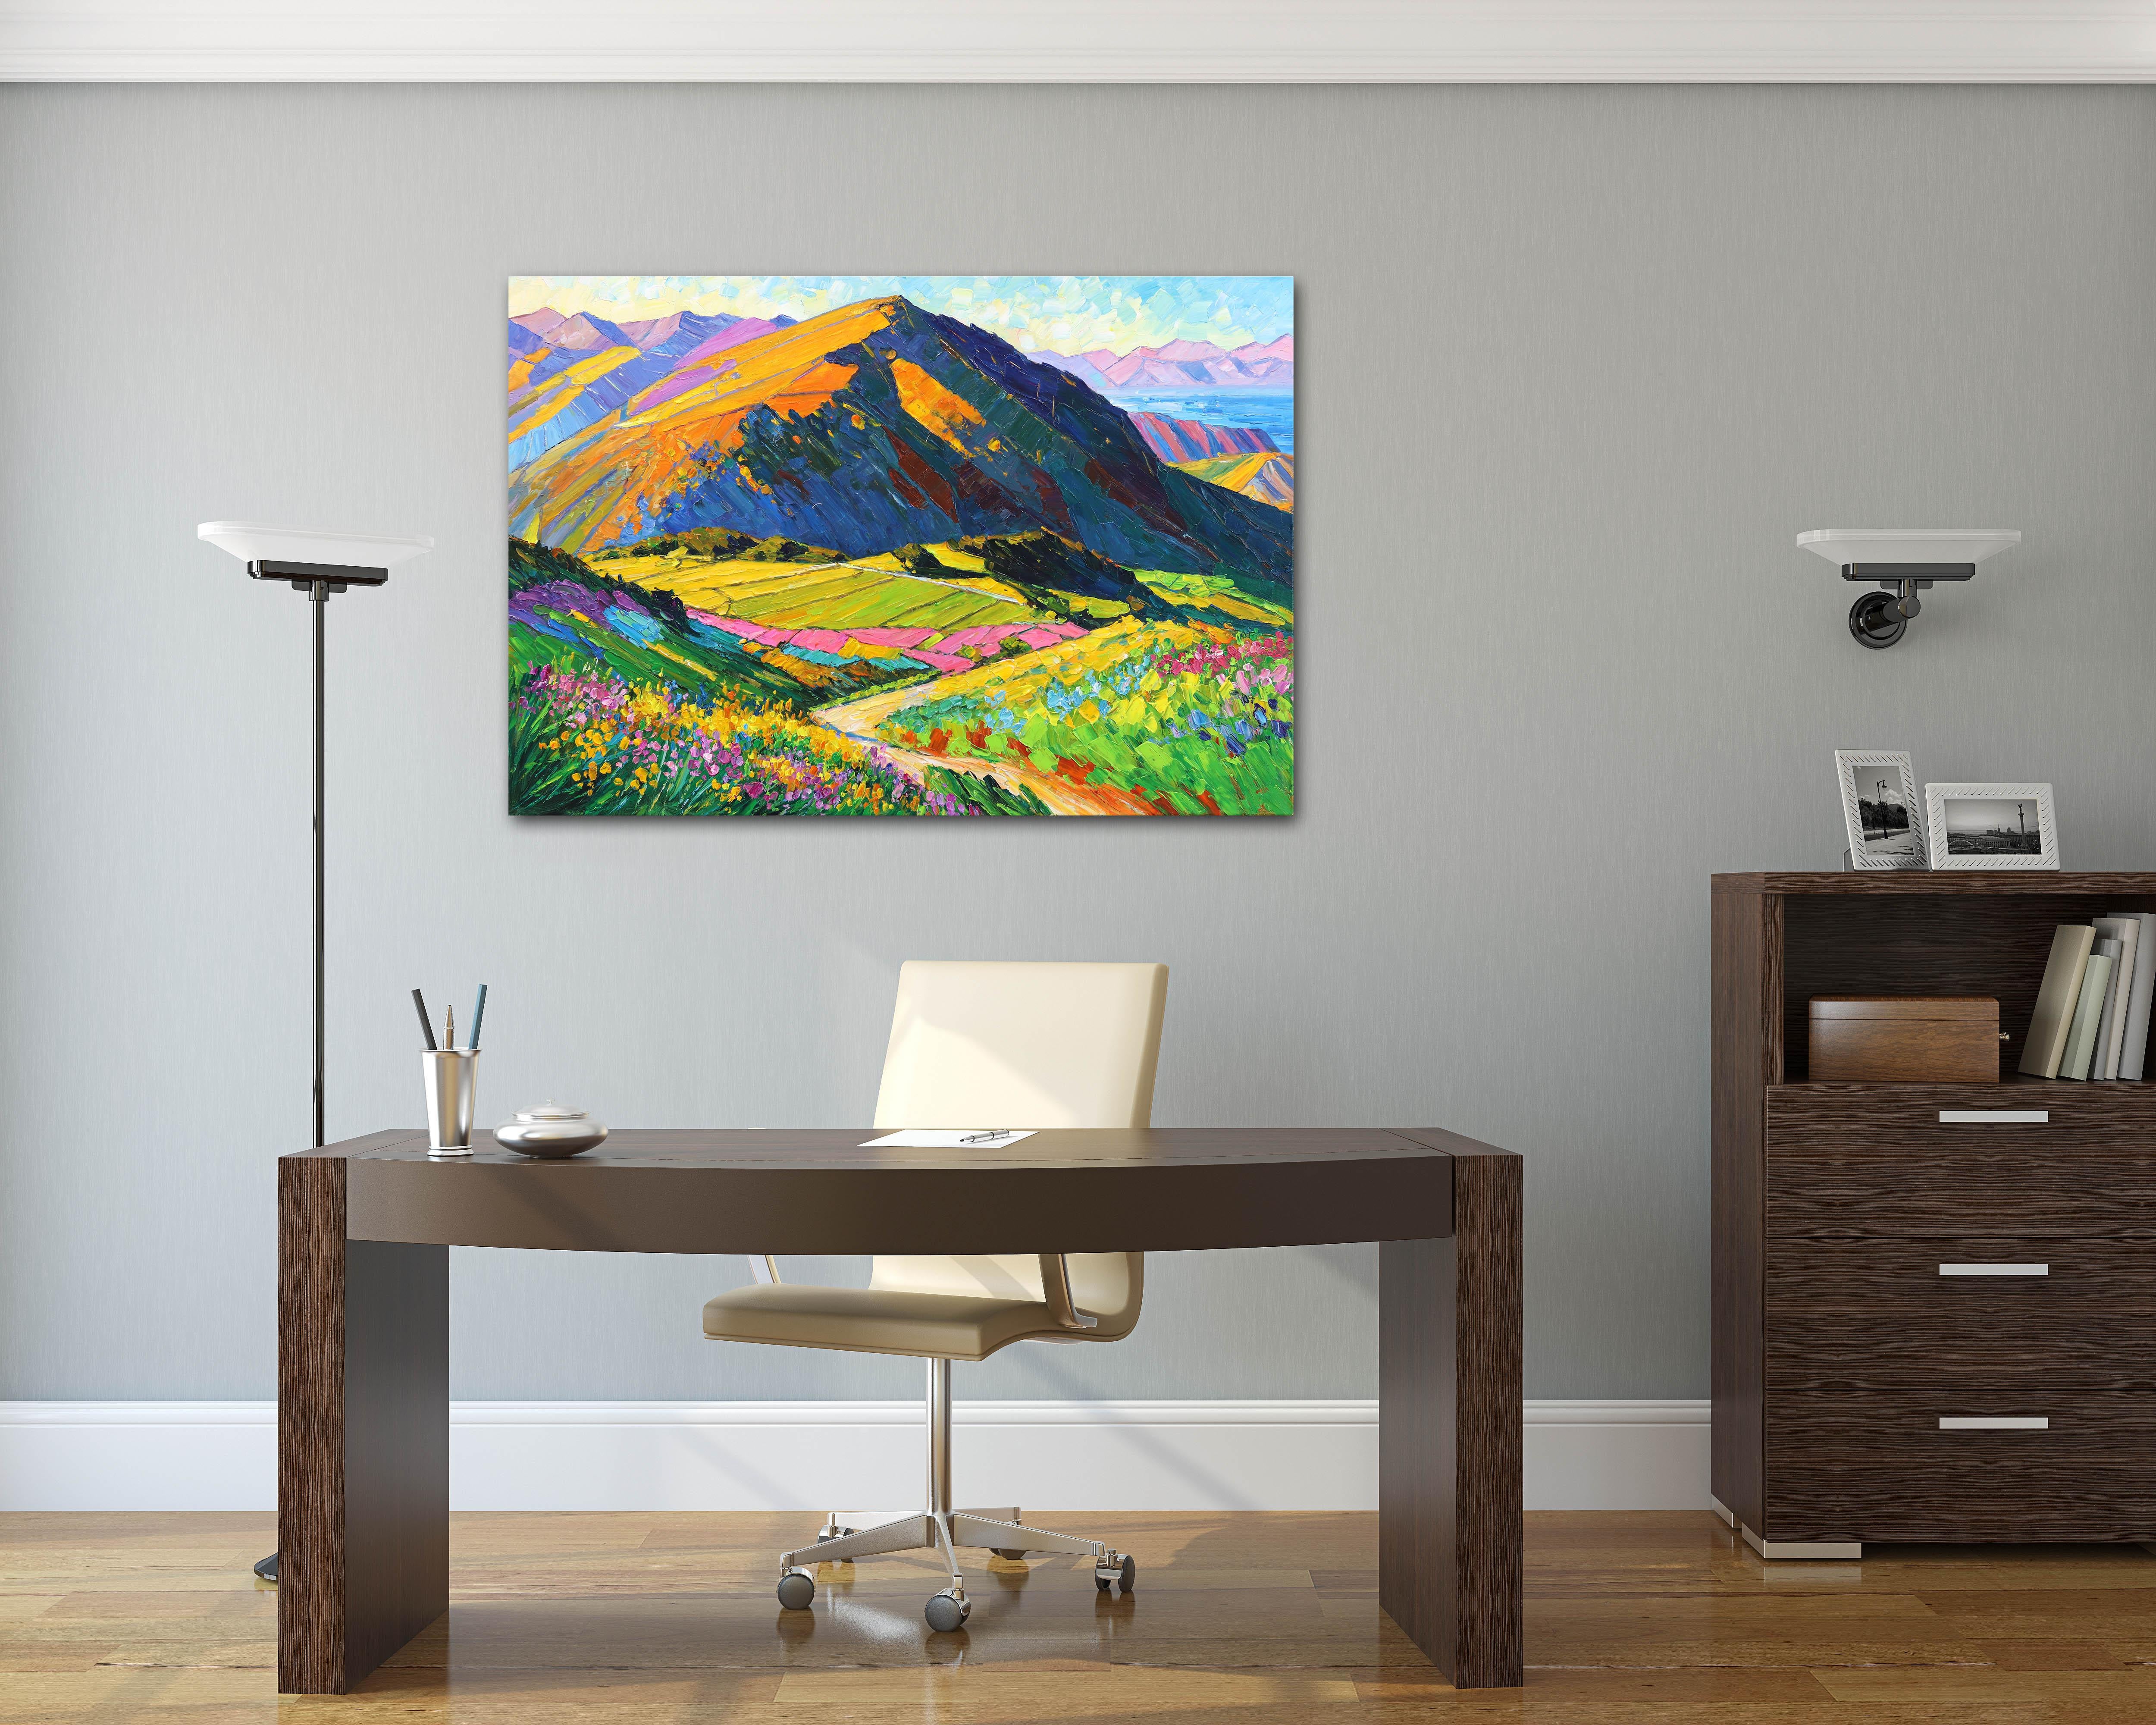 Sommer und das Leben ist einfach – Impressionistisches Landschaftsgemälde, Bergmalerei – Painting von Katharina Husslein